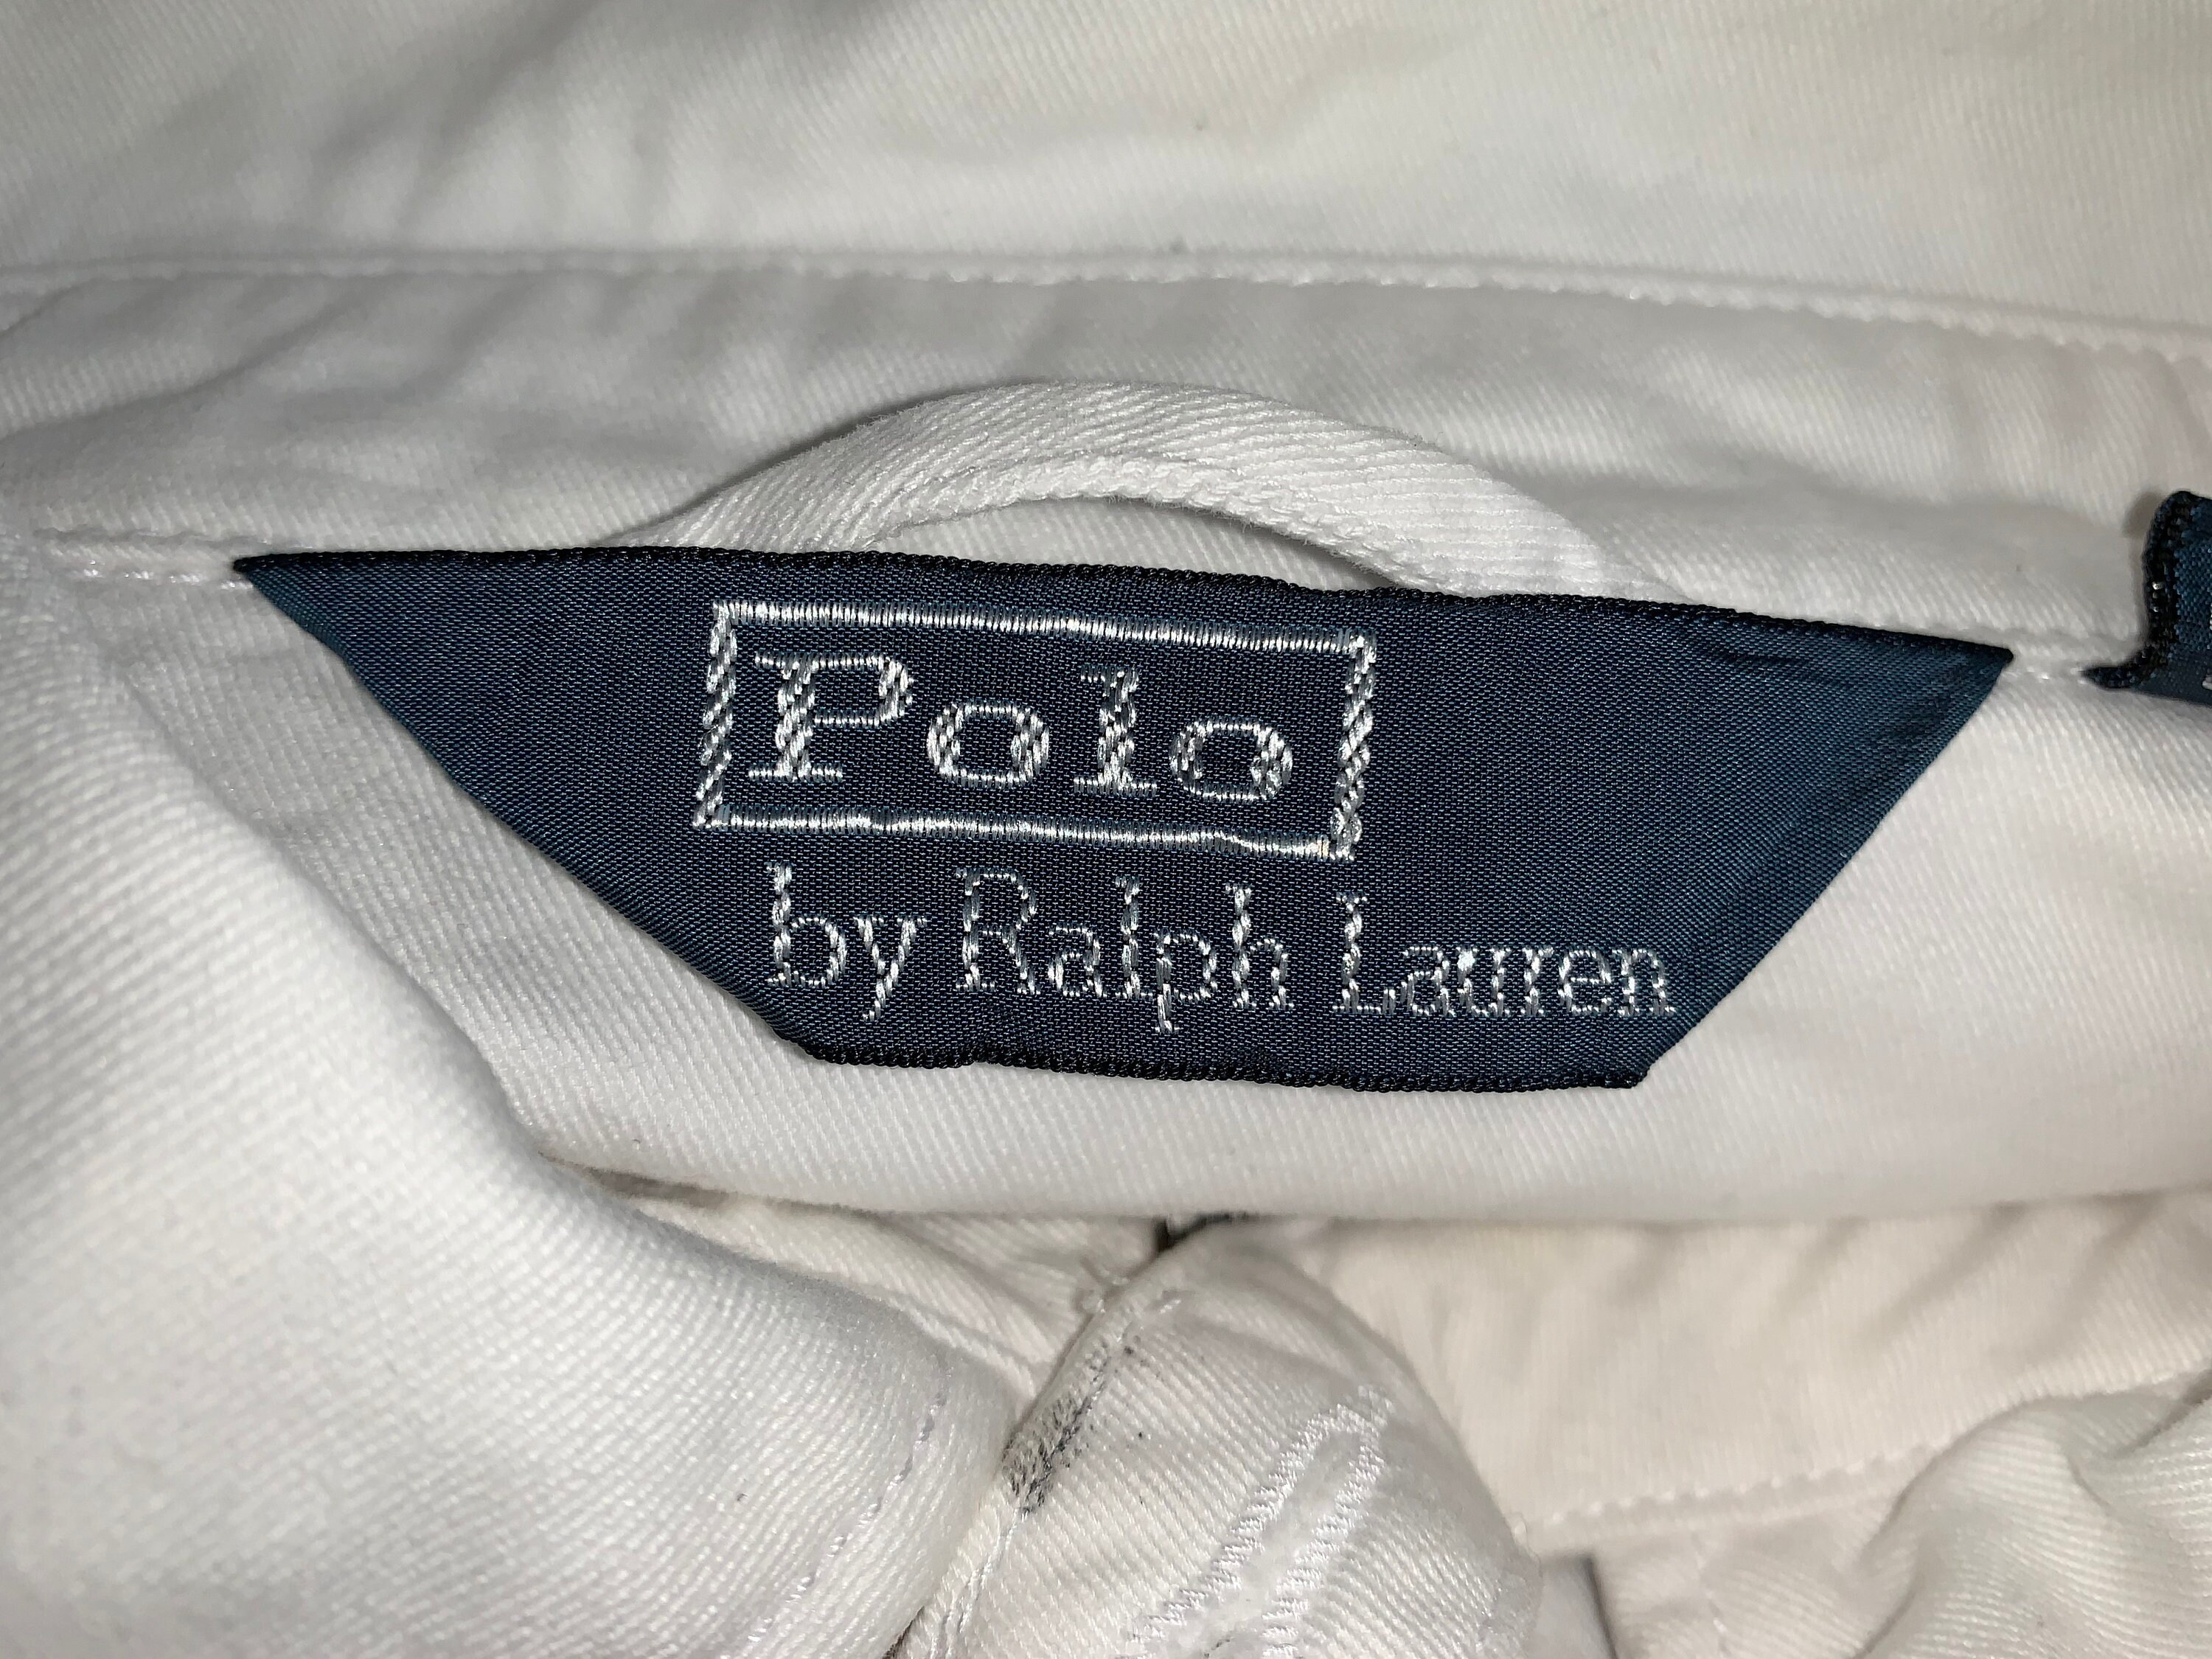 Polo Ralph Lauren Lolife Zipper Jacket Cotton L Size - Etsy